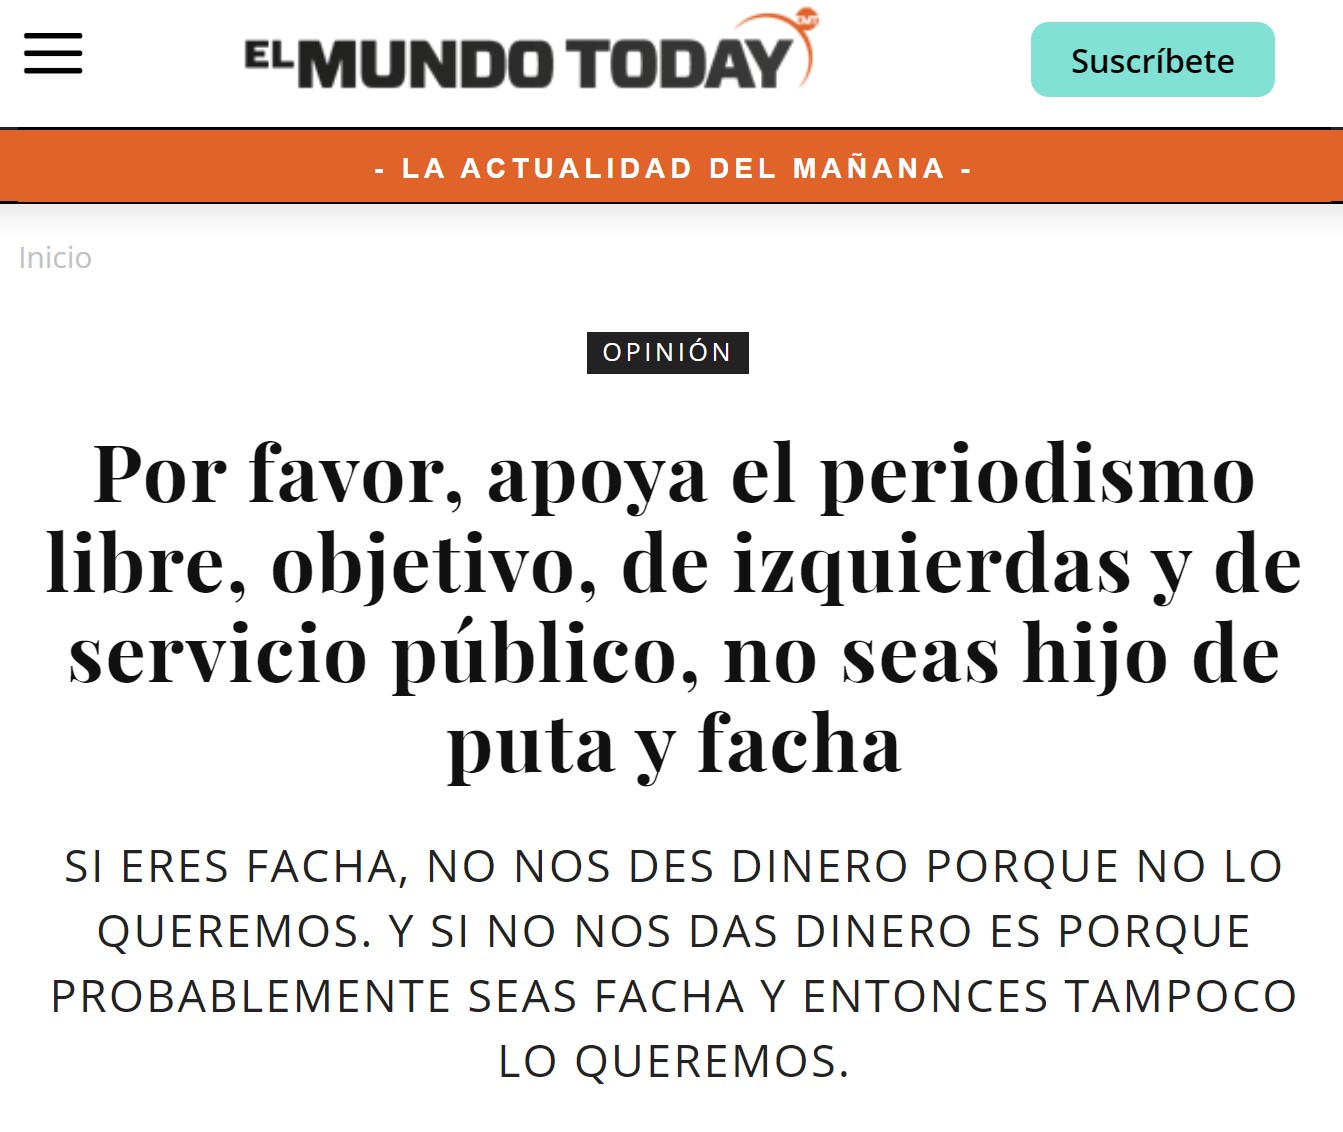 Parece que Ignacio Escolar ha comprado El Mundo Today